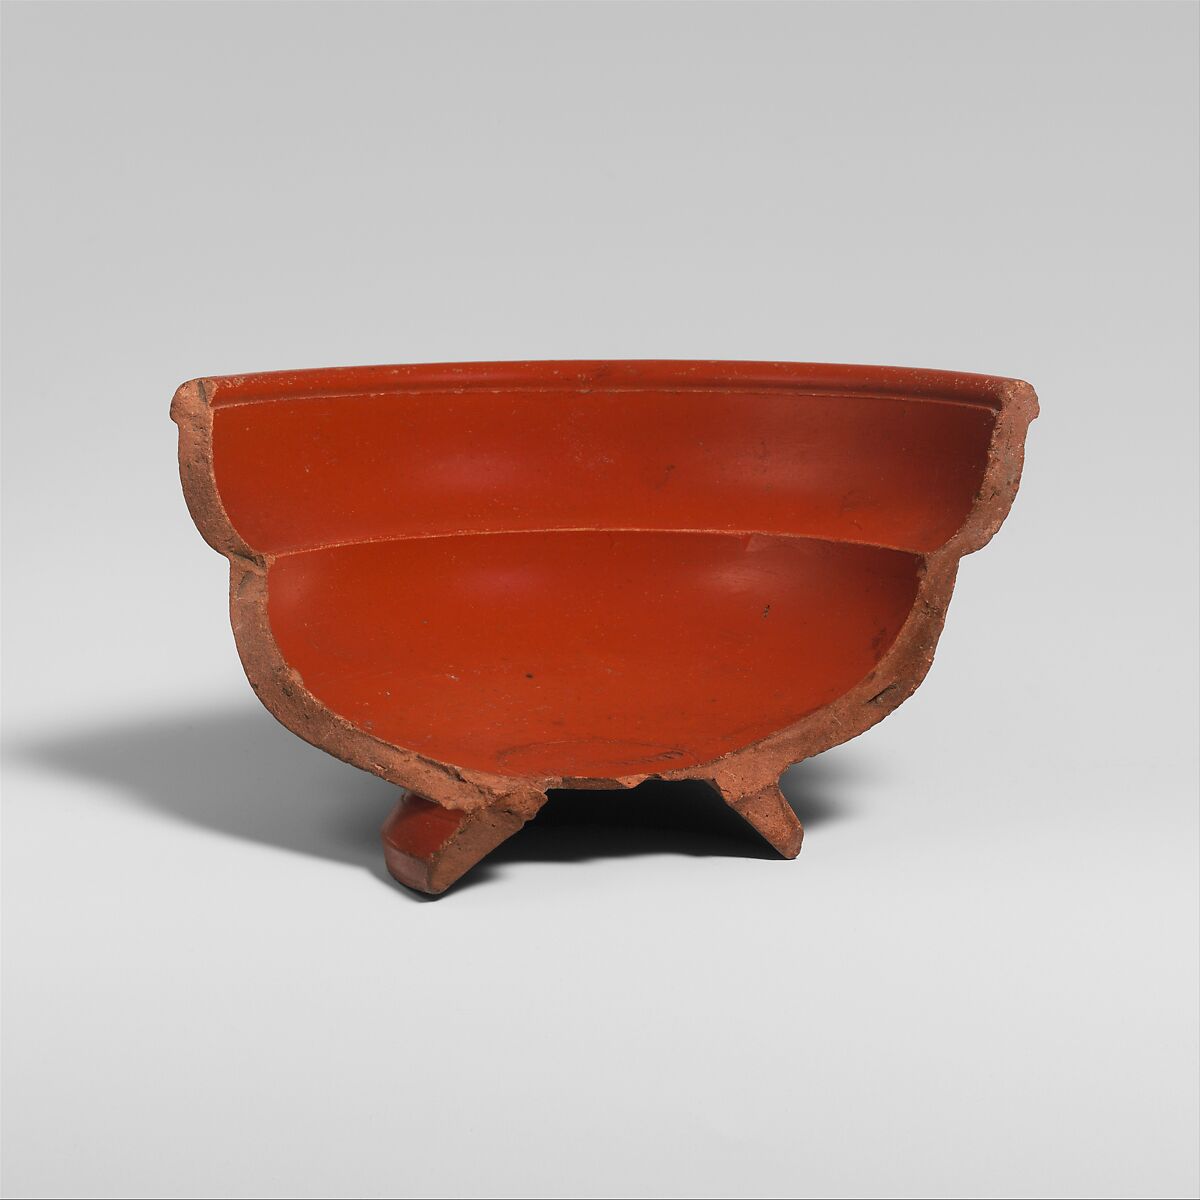 Fragmentary terracotta bowl, Terracotta, Roman 